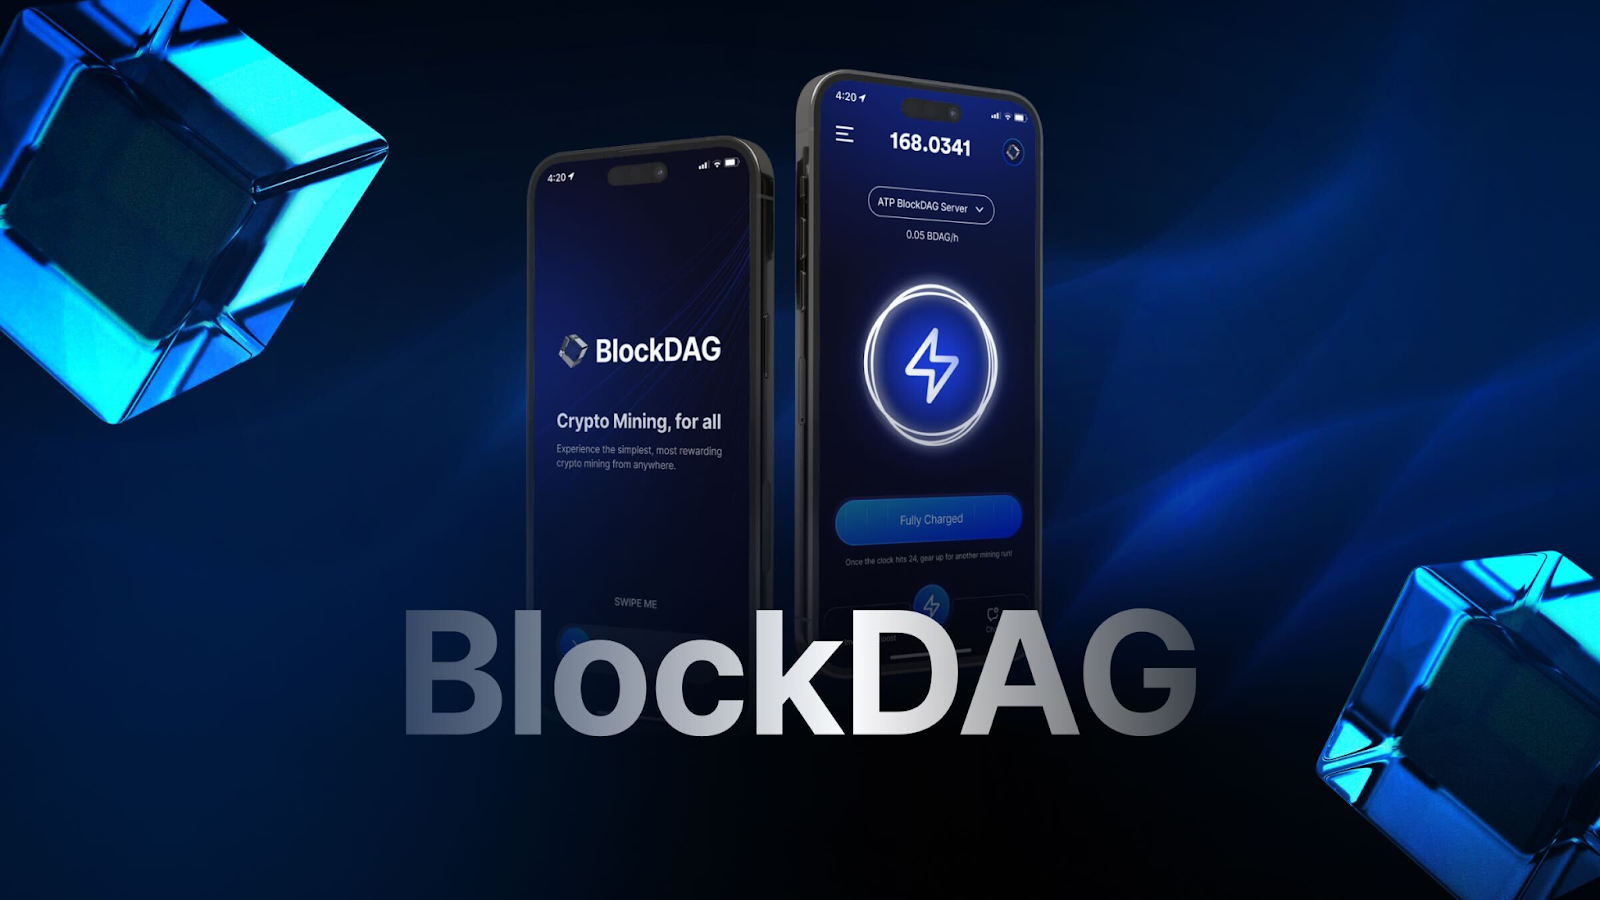 BlockDAG 成为顶级山寨币，具有无与伦比的可扩展性和潜在的 30,000 倍投资回报率